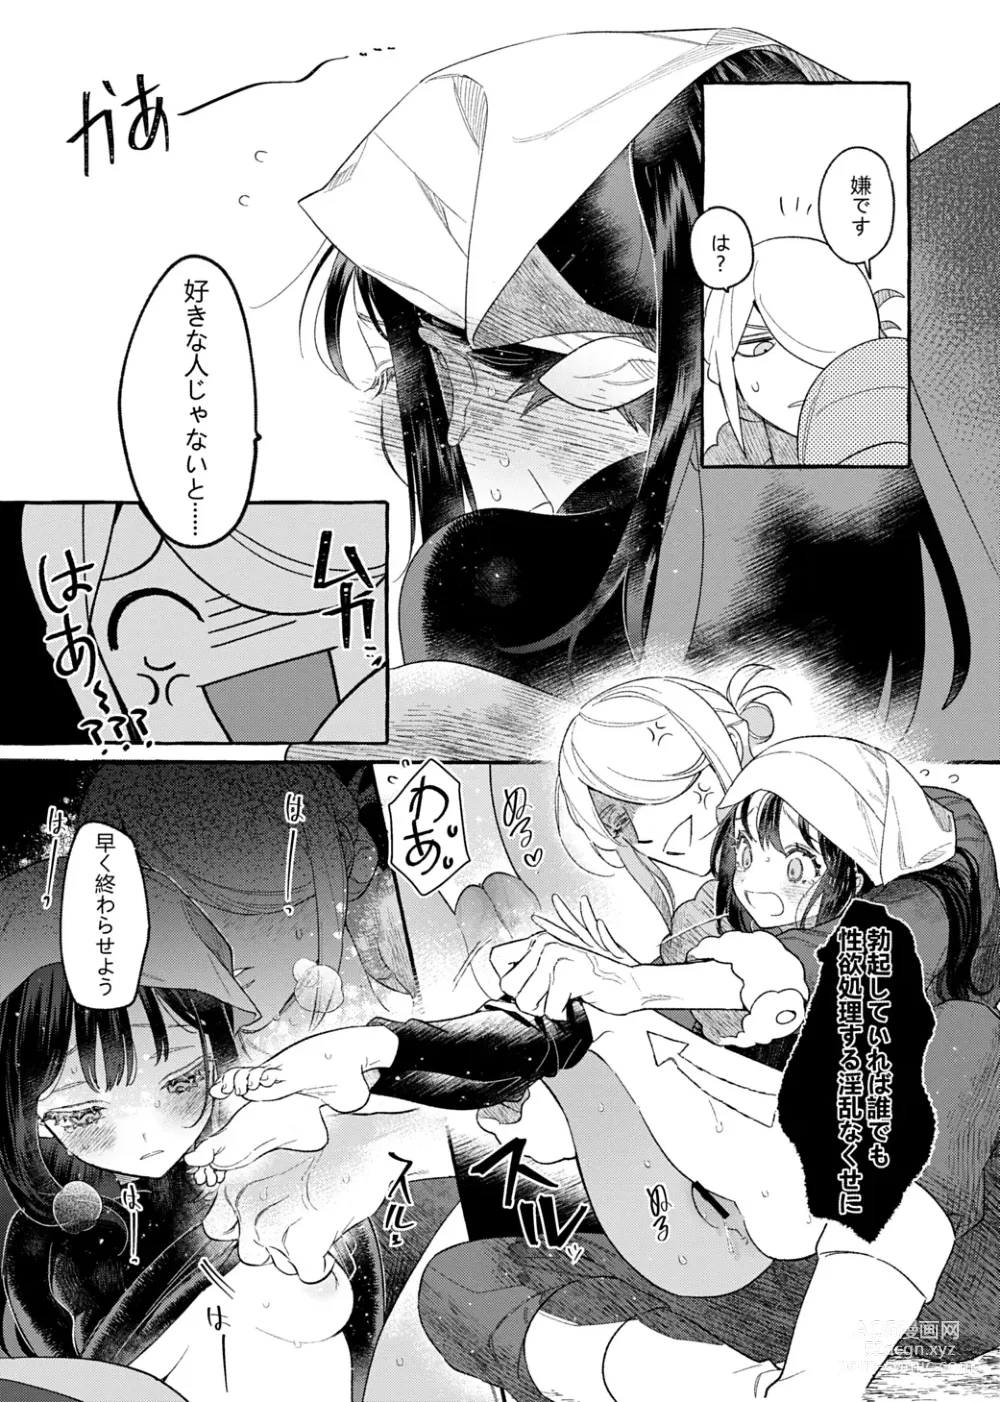 Page 24 of doujinshi Yosomono no Kuse ni